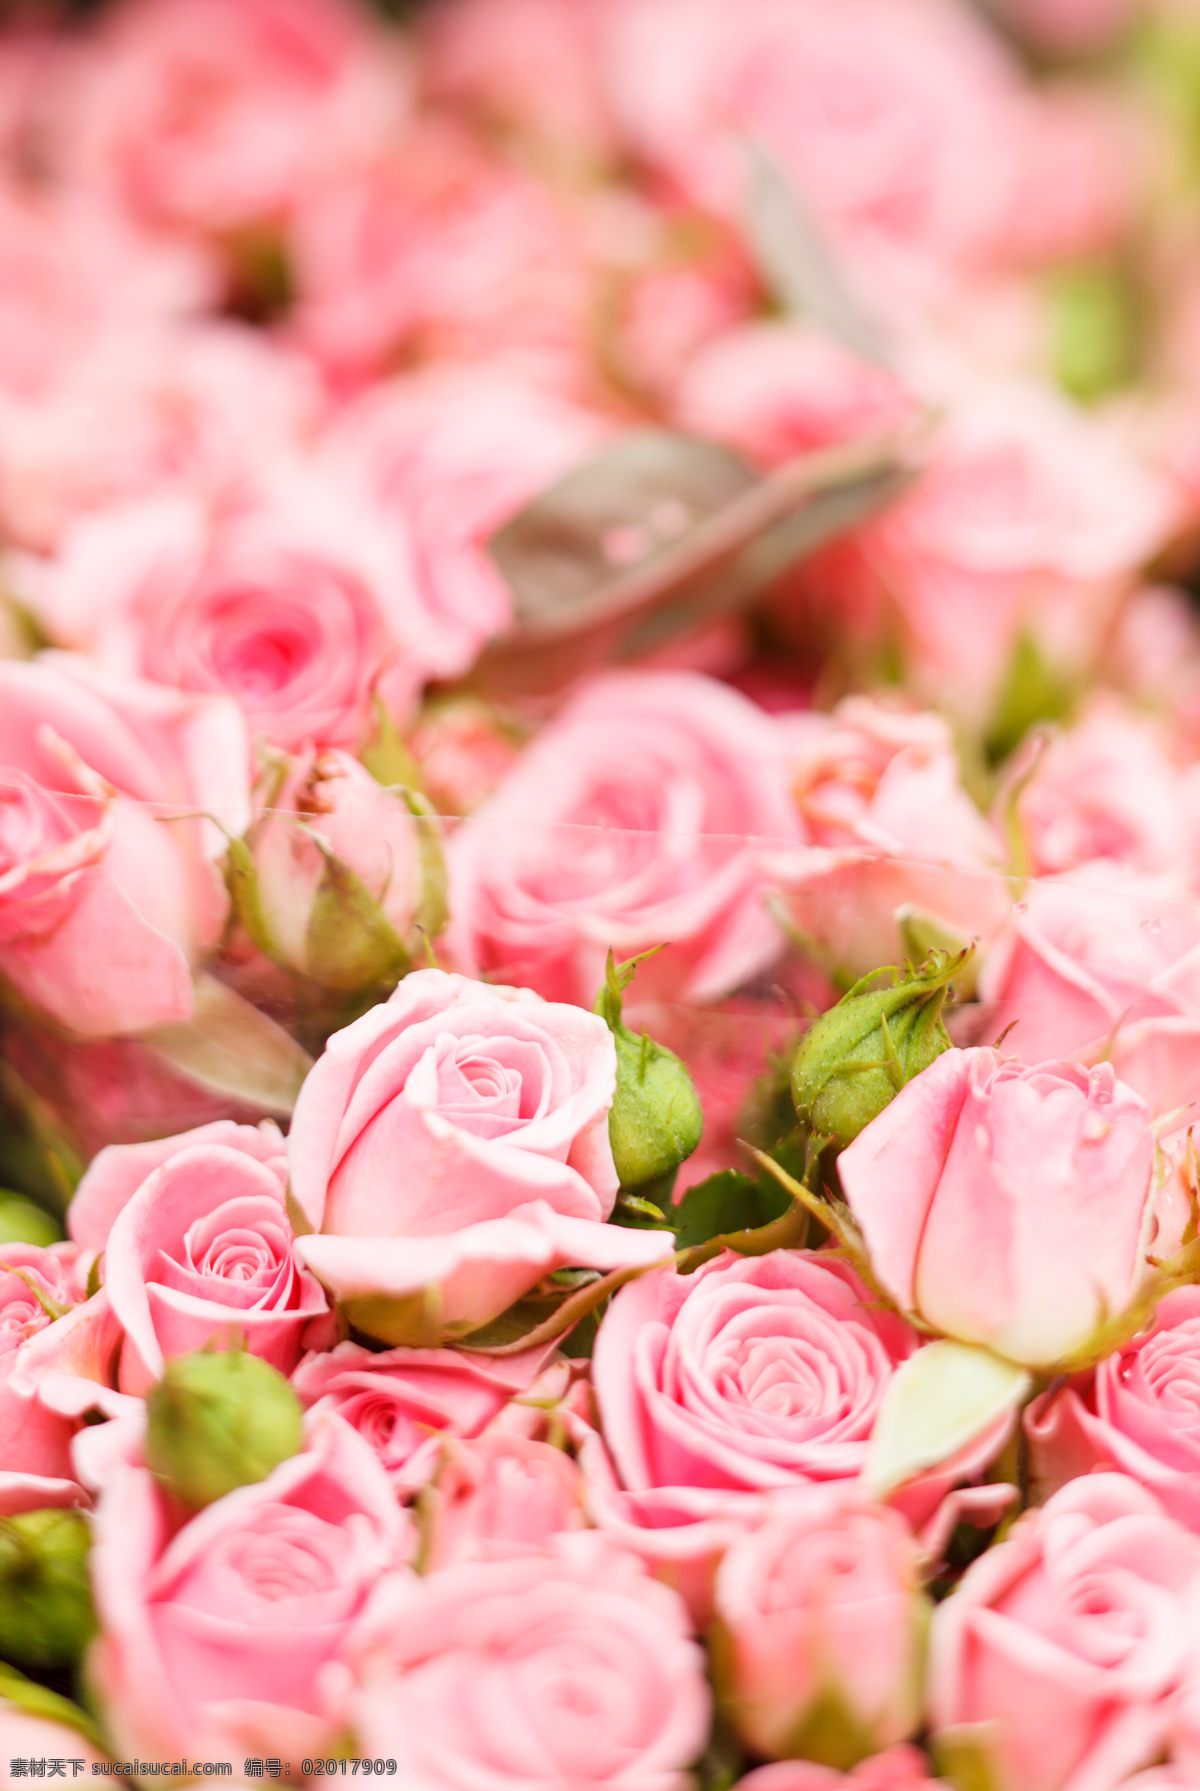 粉红色 玫瑰花 背景 鲜花摄影 美丽花卉 美丽花朵 鲜花背景 花草树木 生物世界 粉色